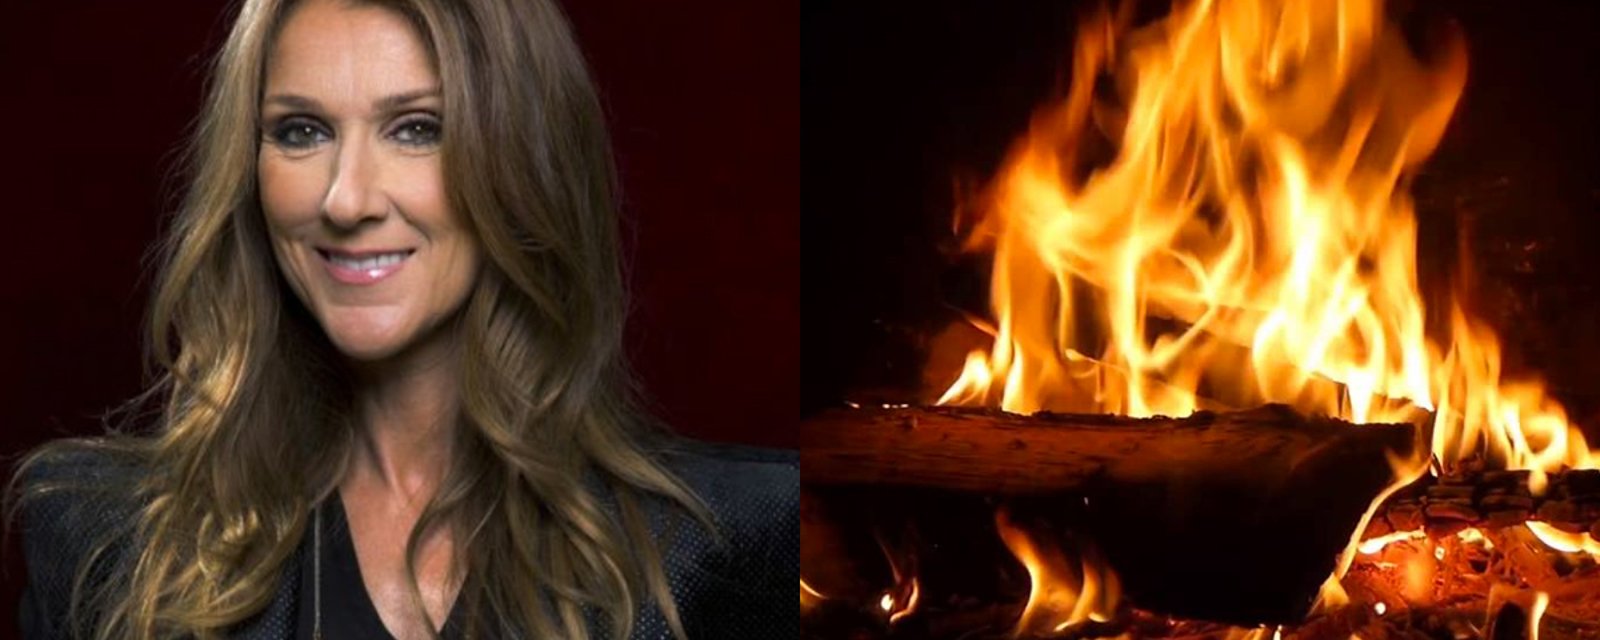 Un must pour votre réveillon: la vidéo de feu de foyer de Céline Dion, avec sa musique de Noël